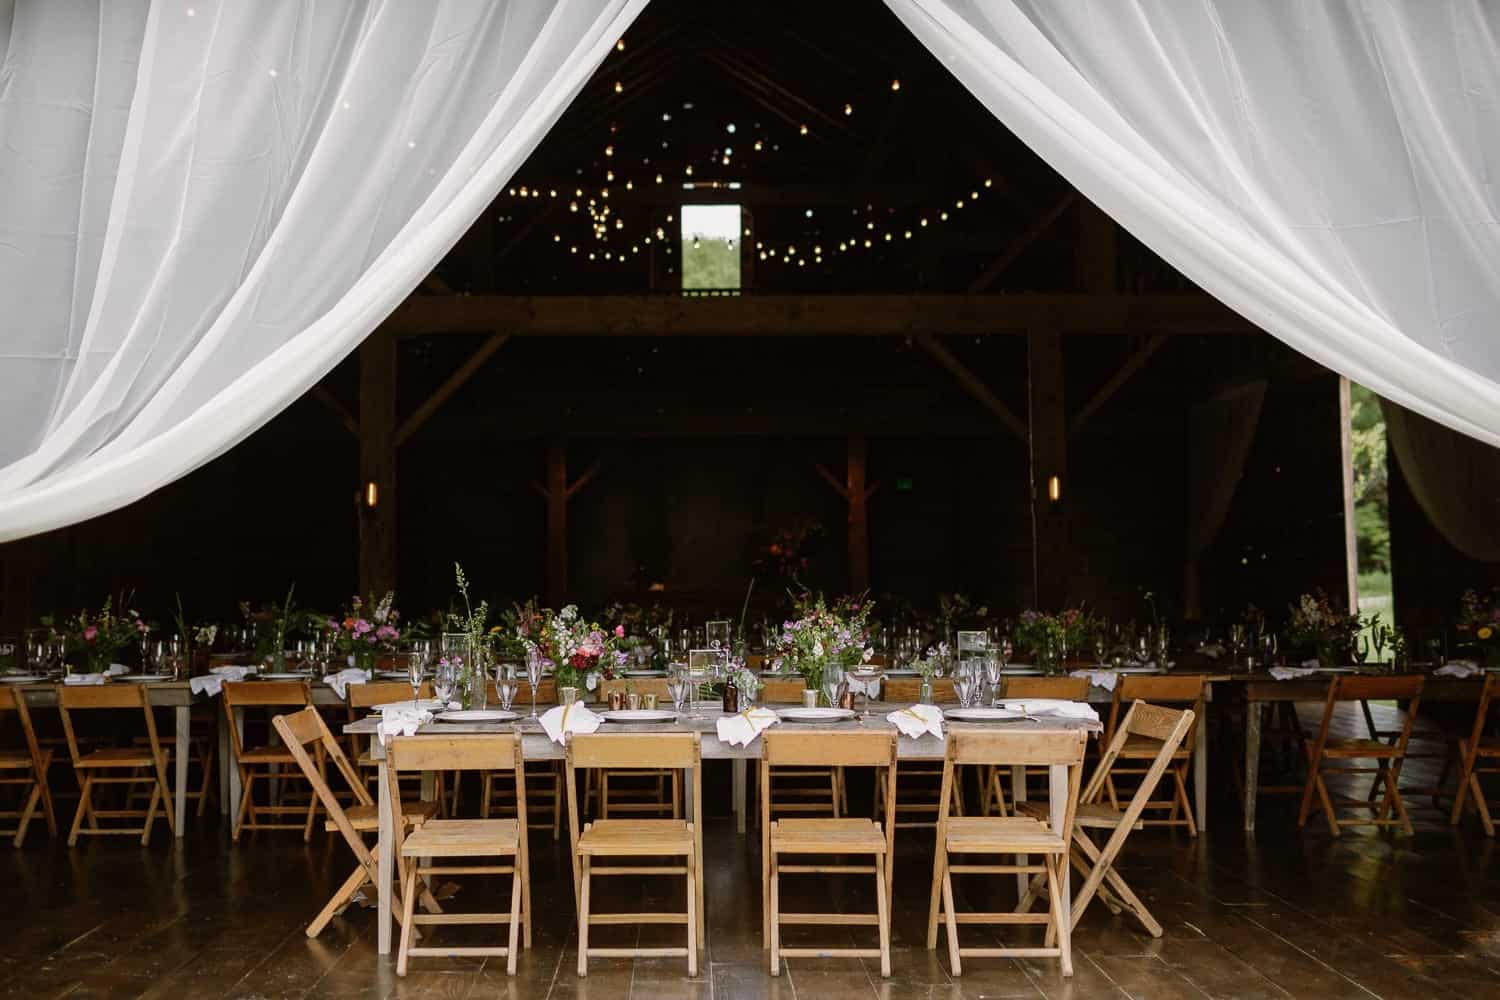 Barn wedding reception details 